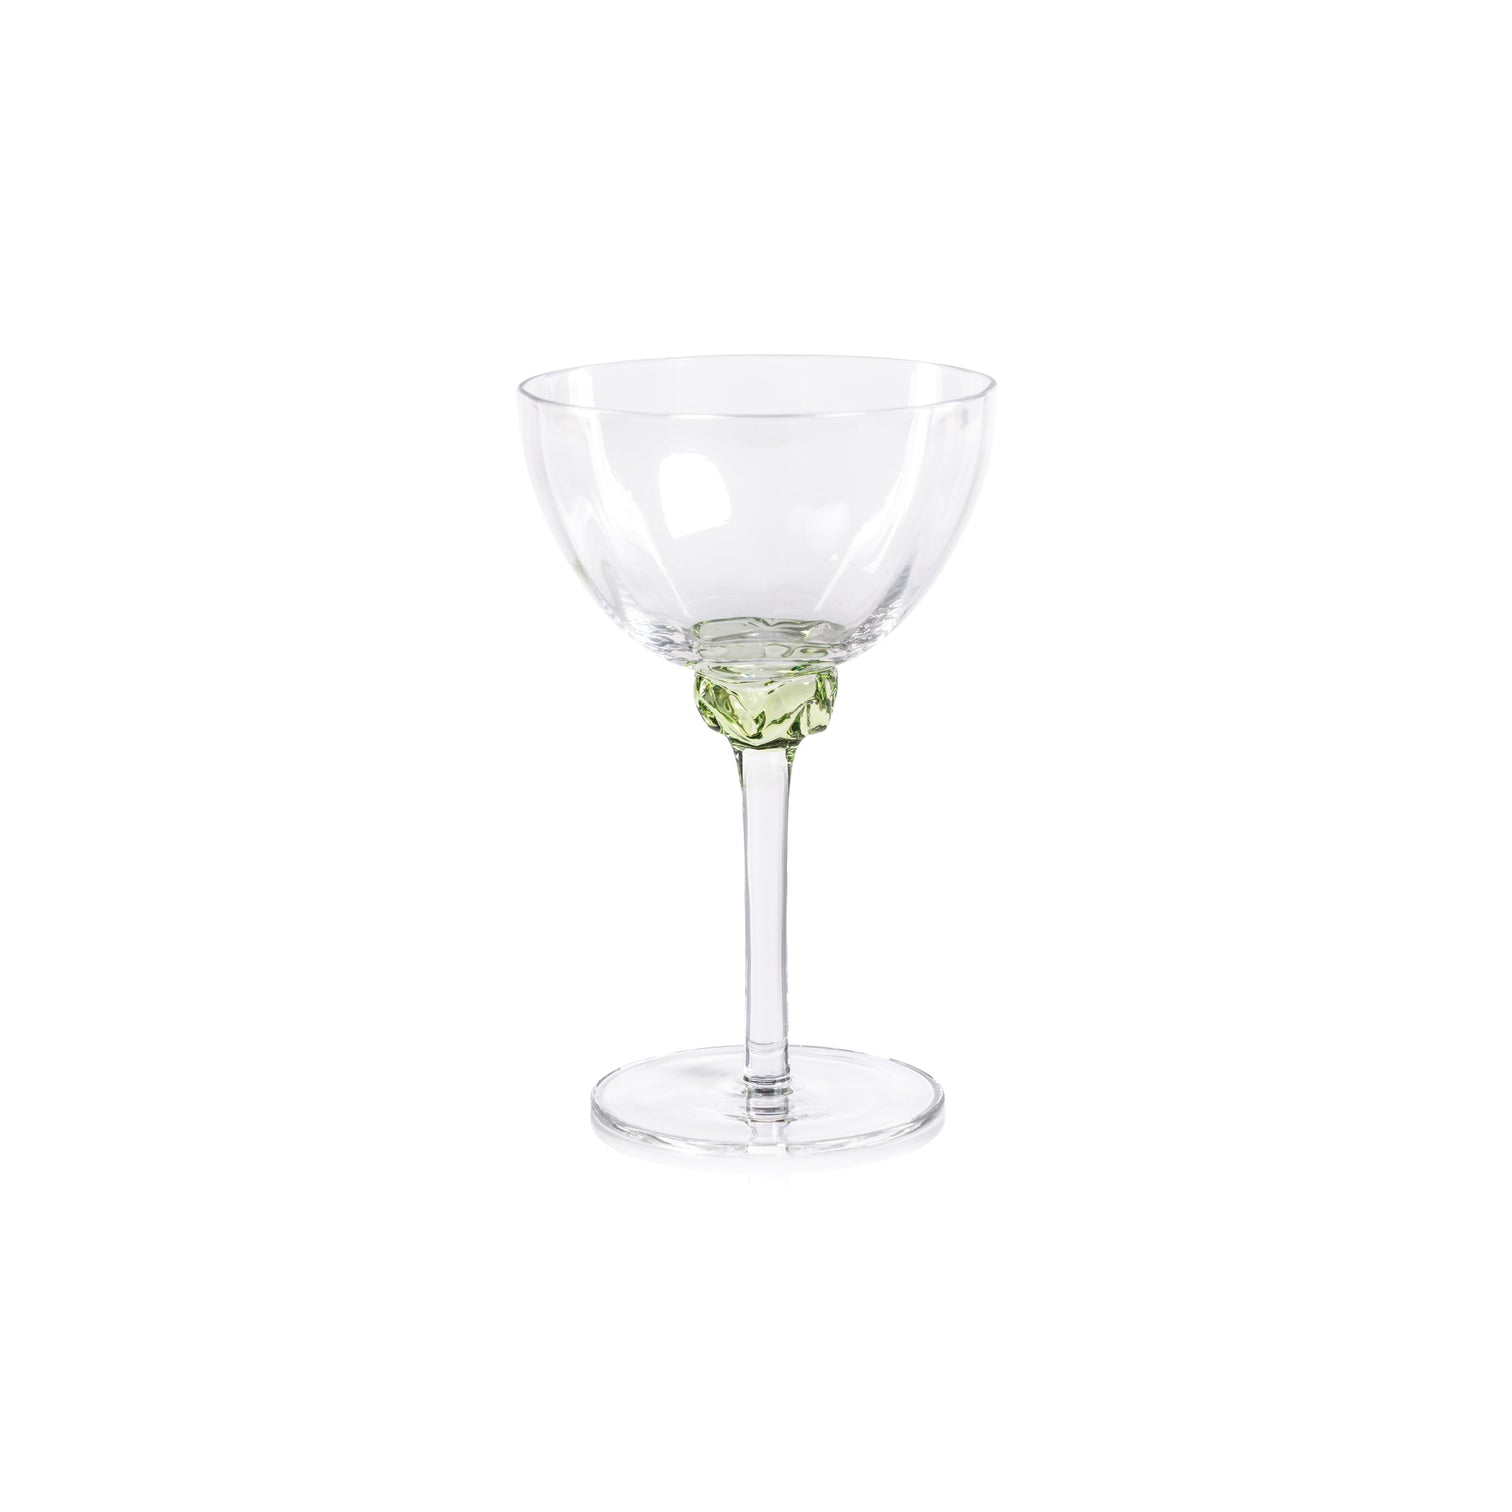 Colette Glassware - Martini/Cocktail Glass